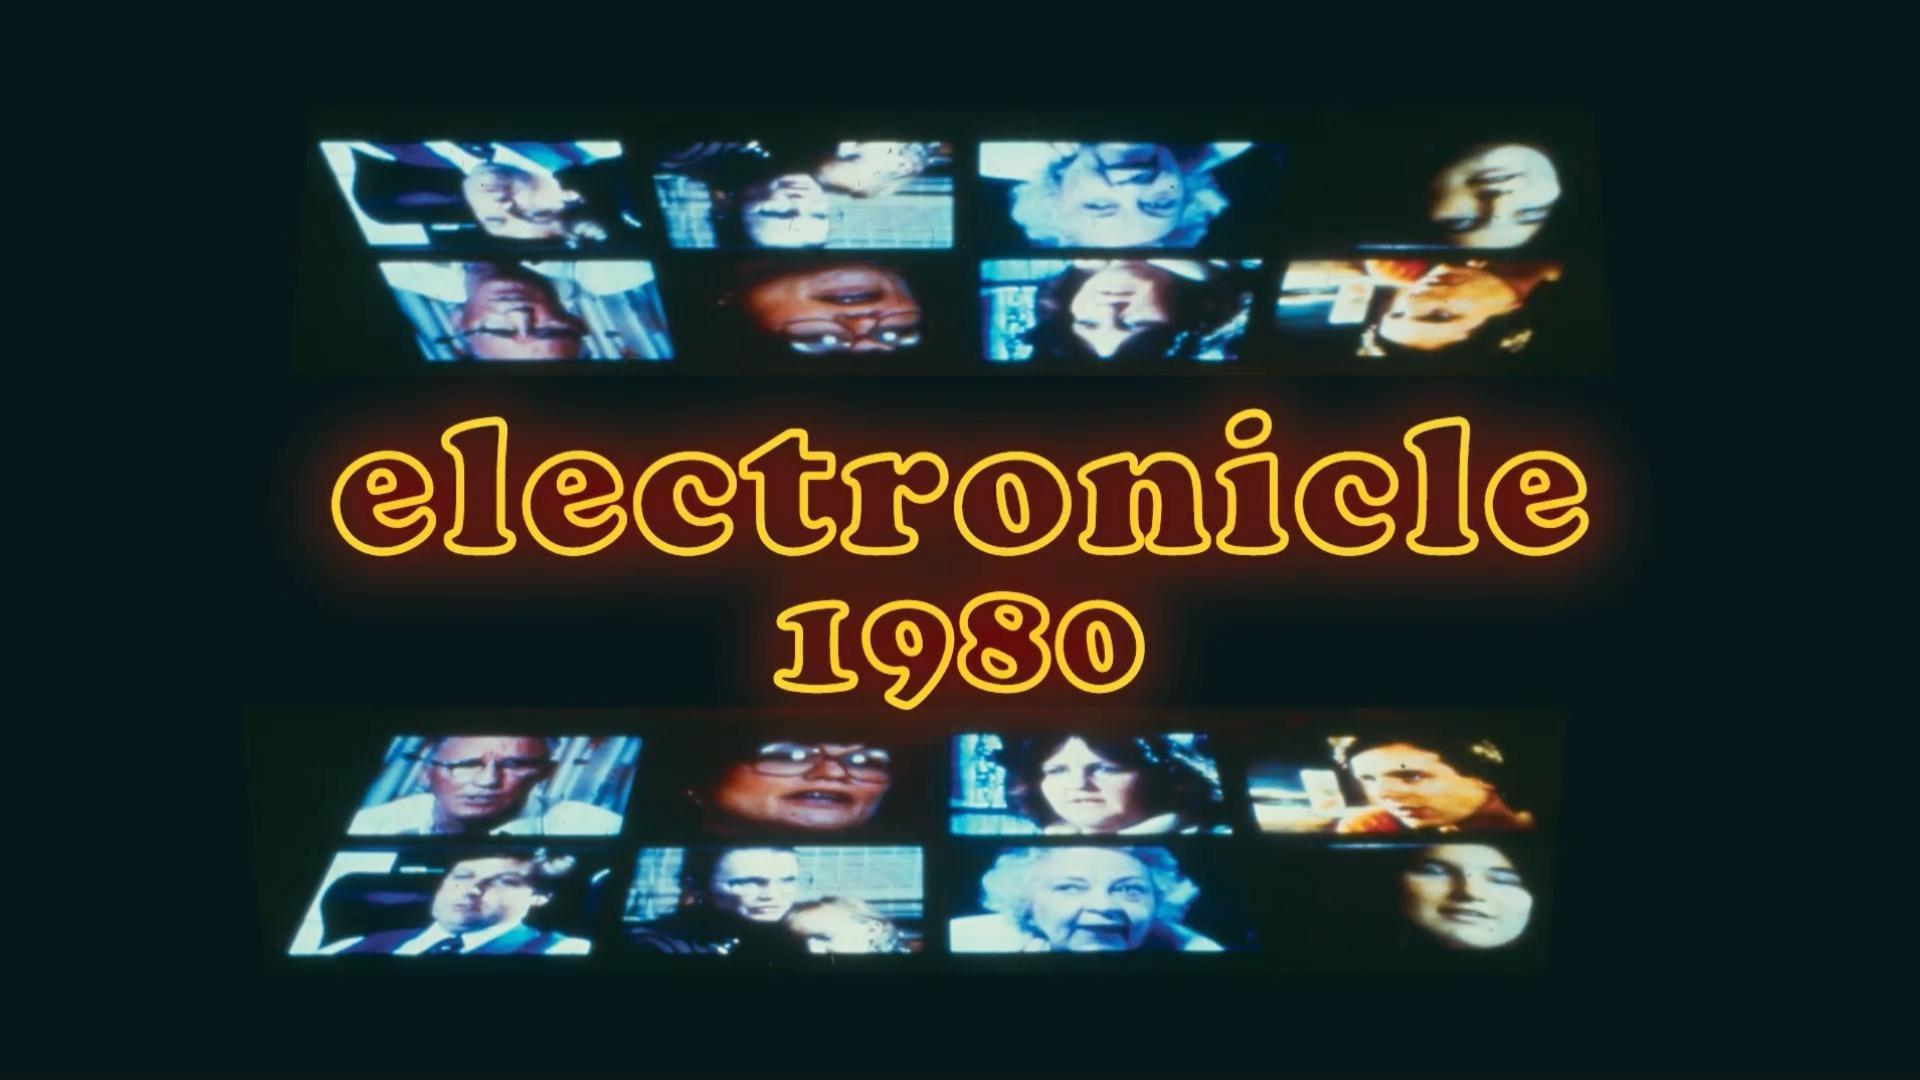 Electronicle 1980